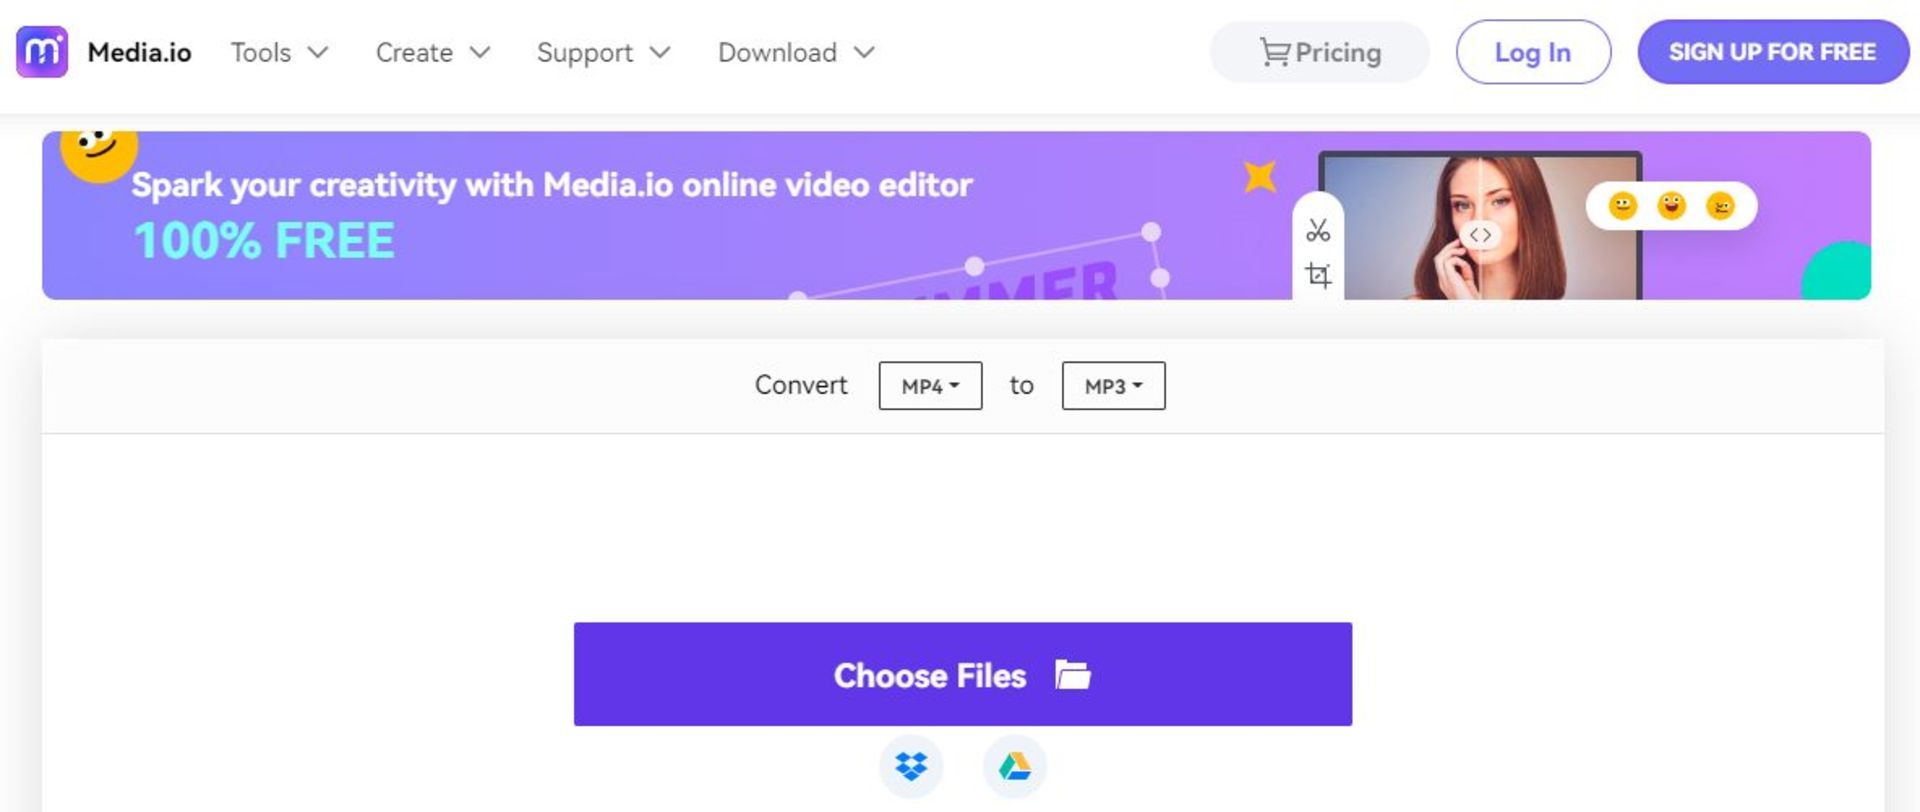 وب سایت Media.io برای تبدیل آنلاین ویدیو به فایل‌های صوتی